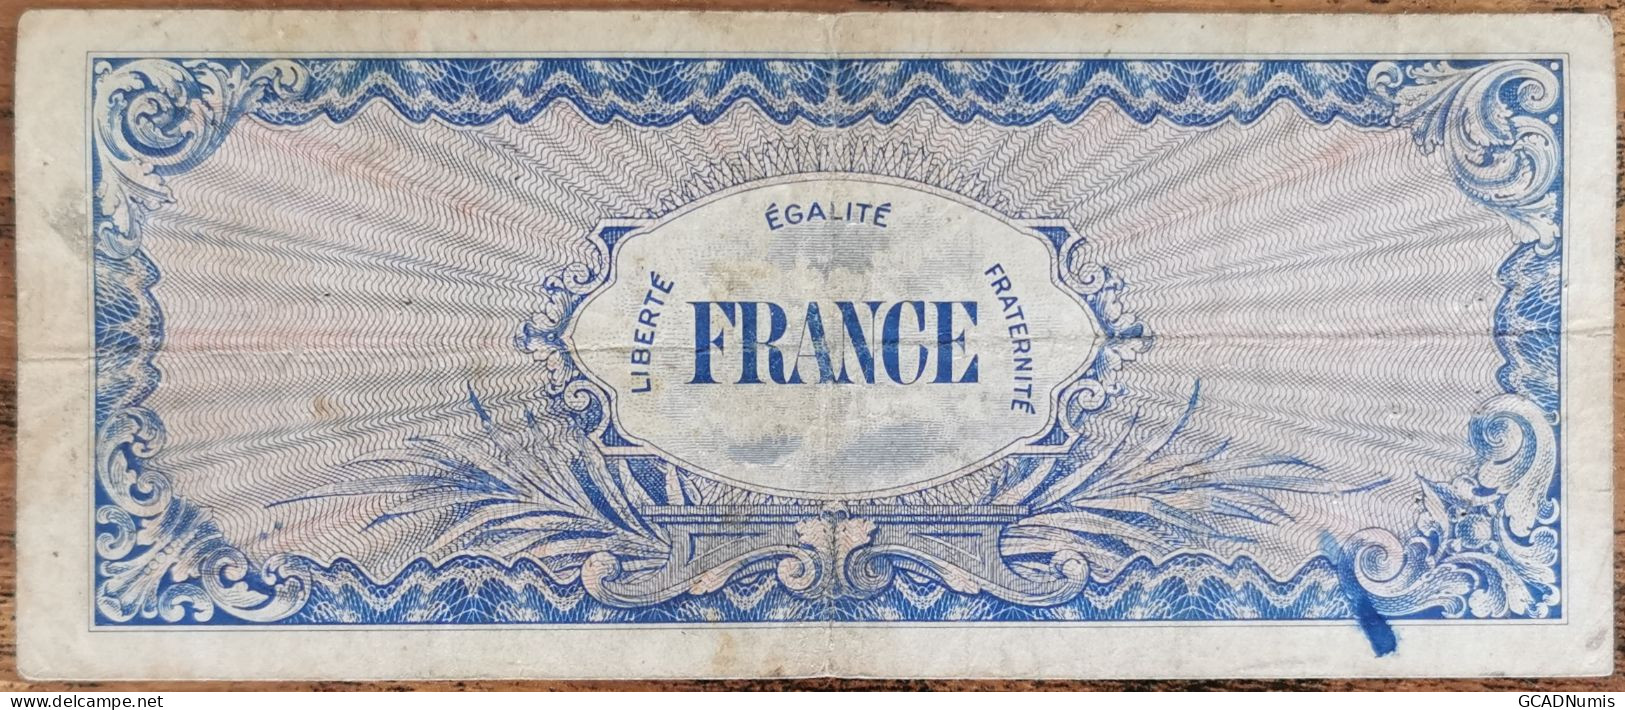 Billet 100 Francs 1944 FRANCE Préparer Par Les USA Pour La Libération Série 7 - 1944 Flagge/Frankreich